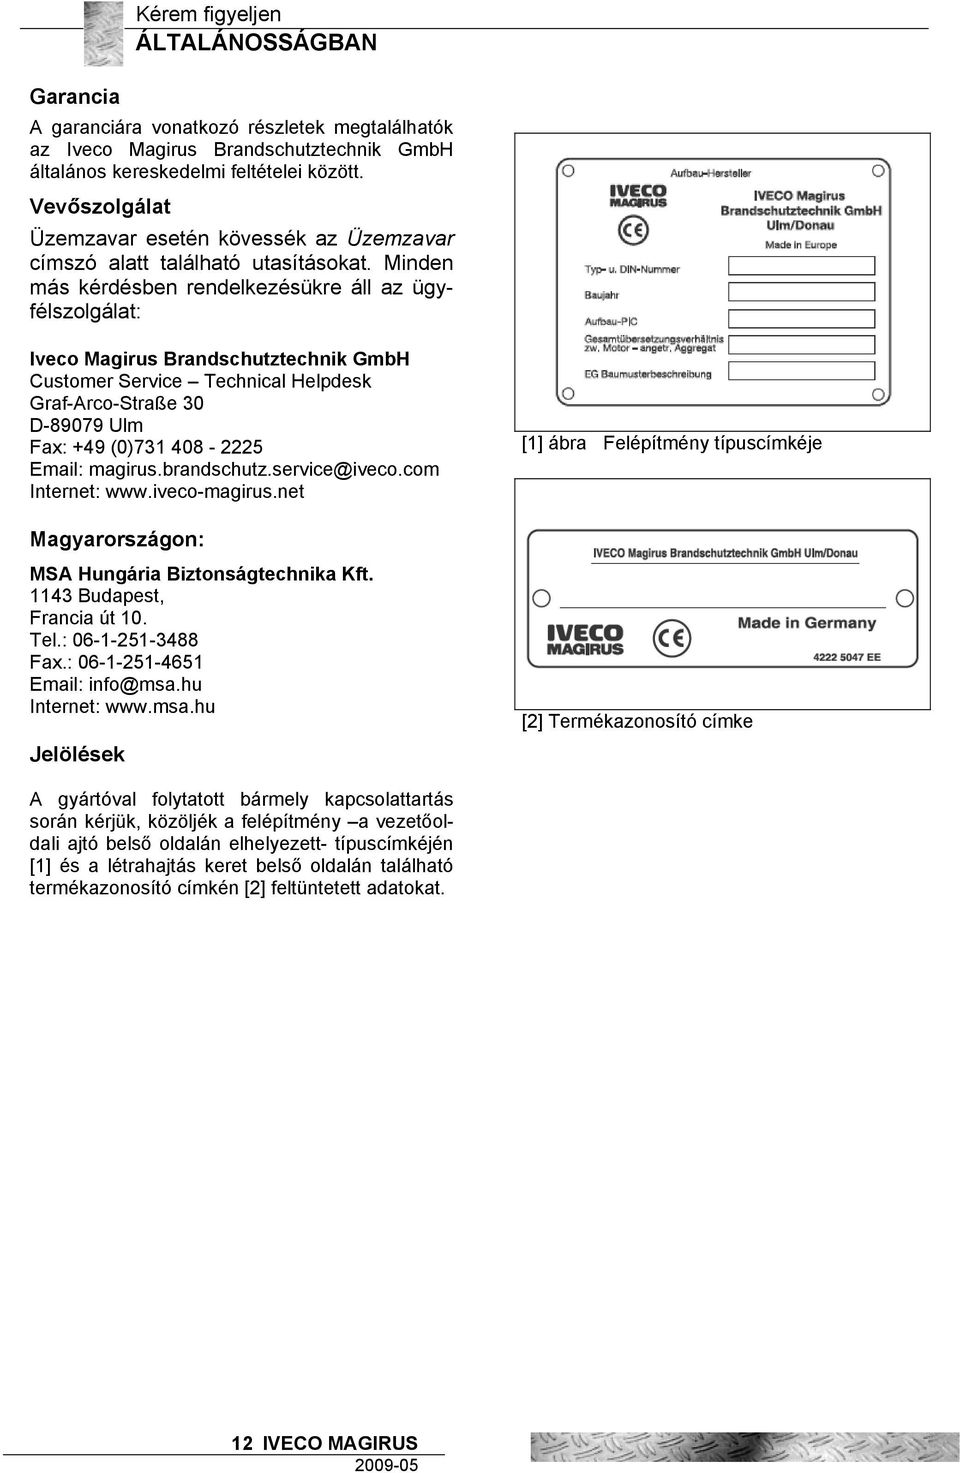 Minden más kérdésben rendelkezésükre áll az ügyfélszolgálat: Iveco Magirus Brandschutztechnik GmbH Customer Service Technical Helpdesk Graf-Arco-Straße 30 D-89079 Ulm Fax: +49 (0)731 408-2225 Email: